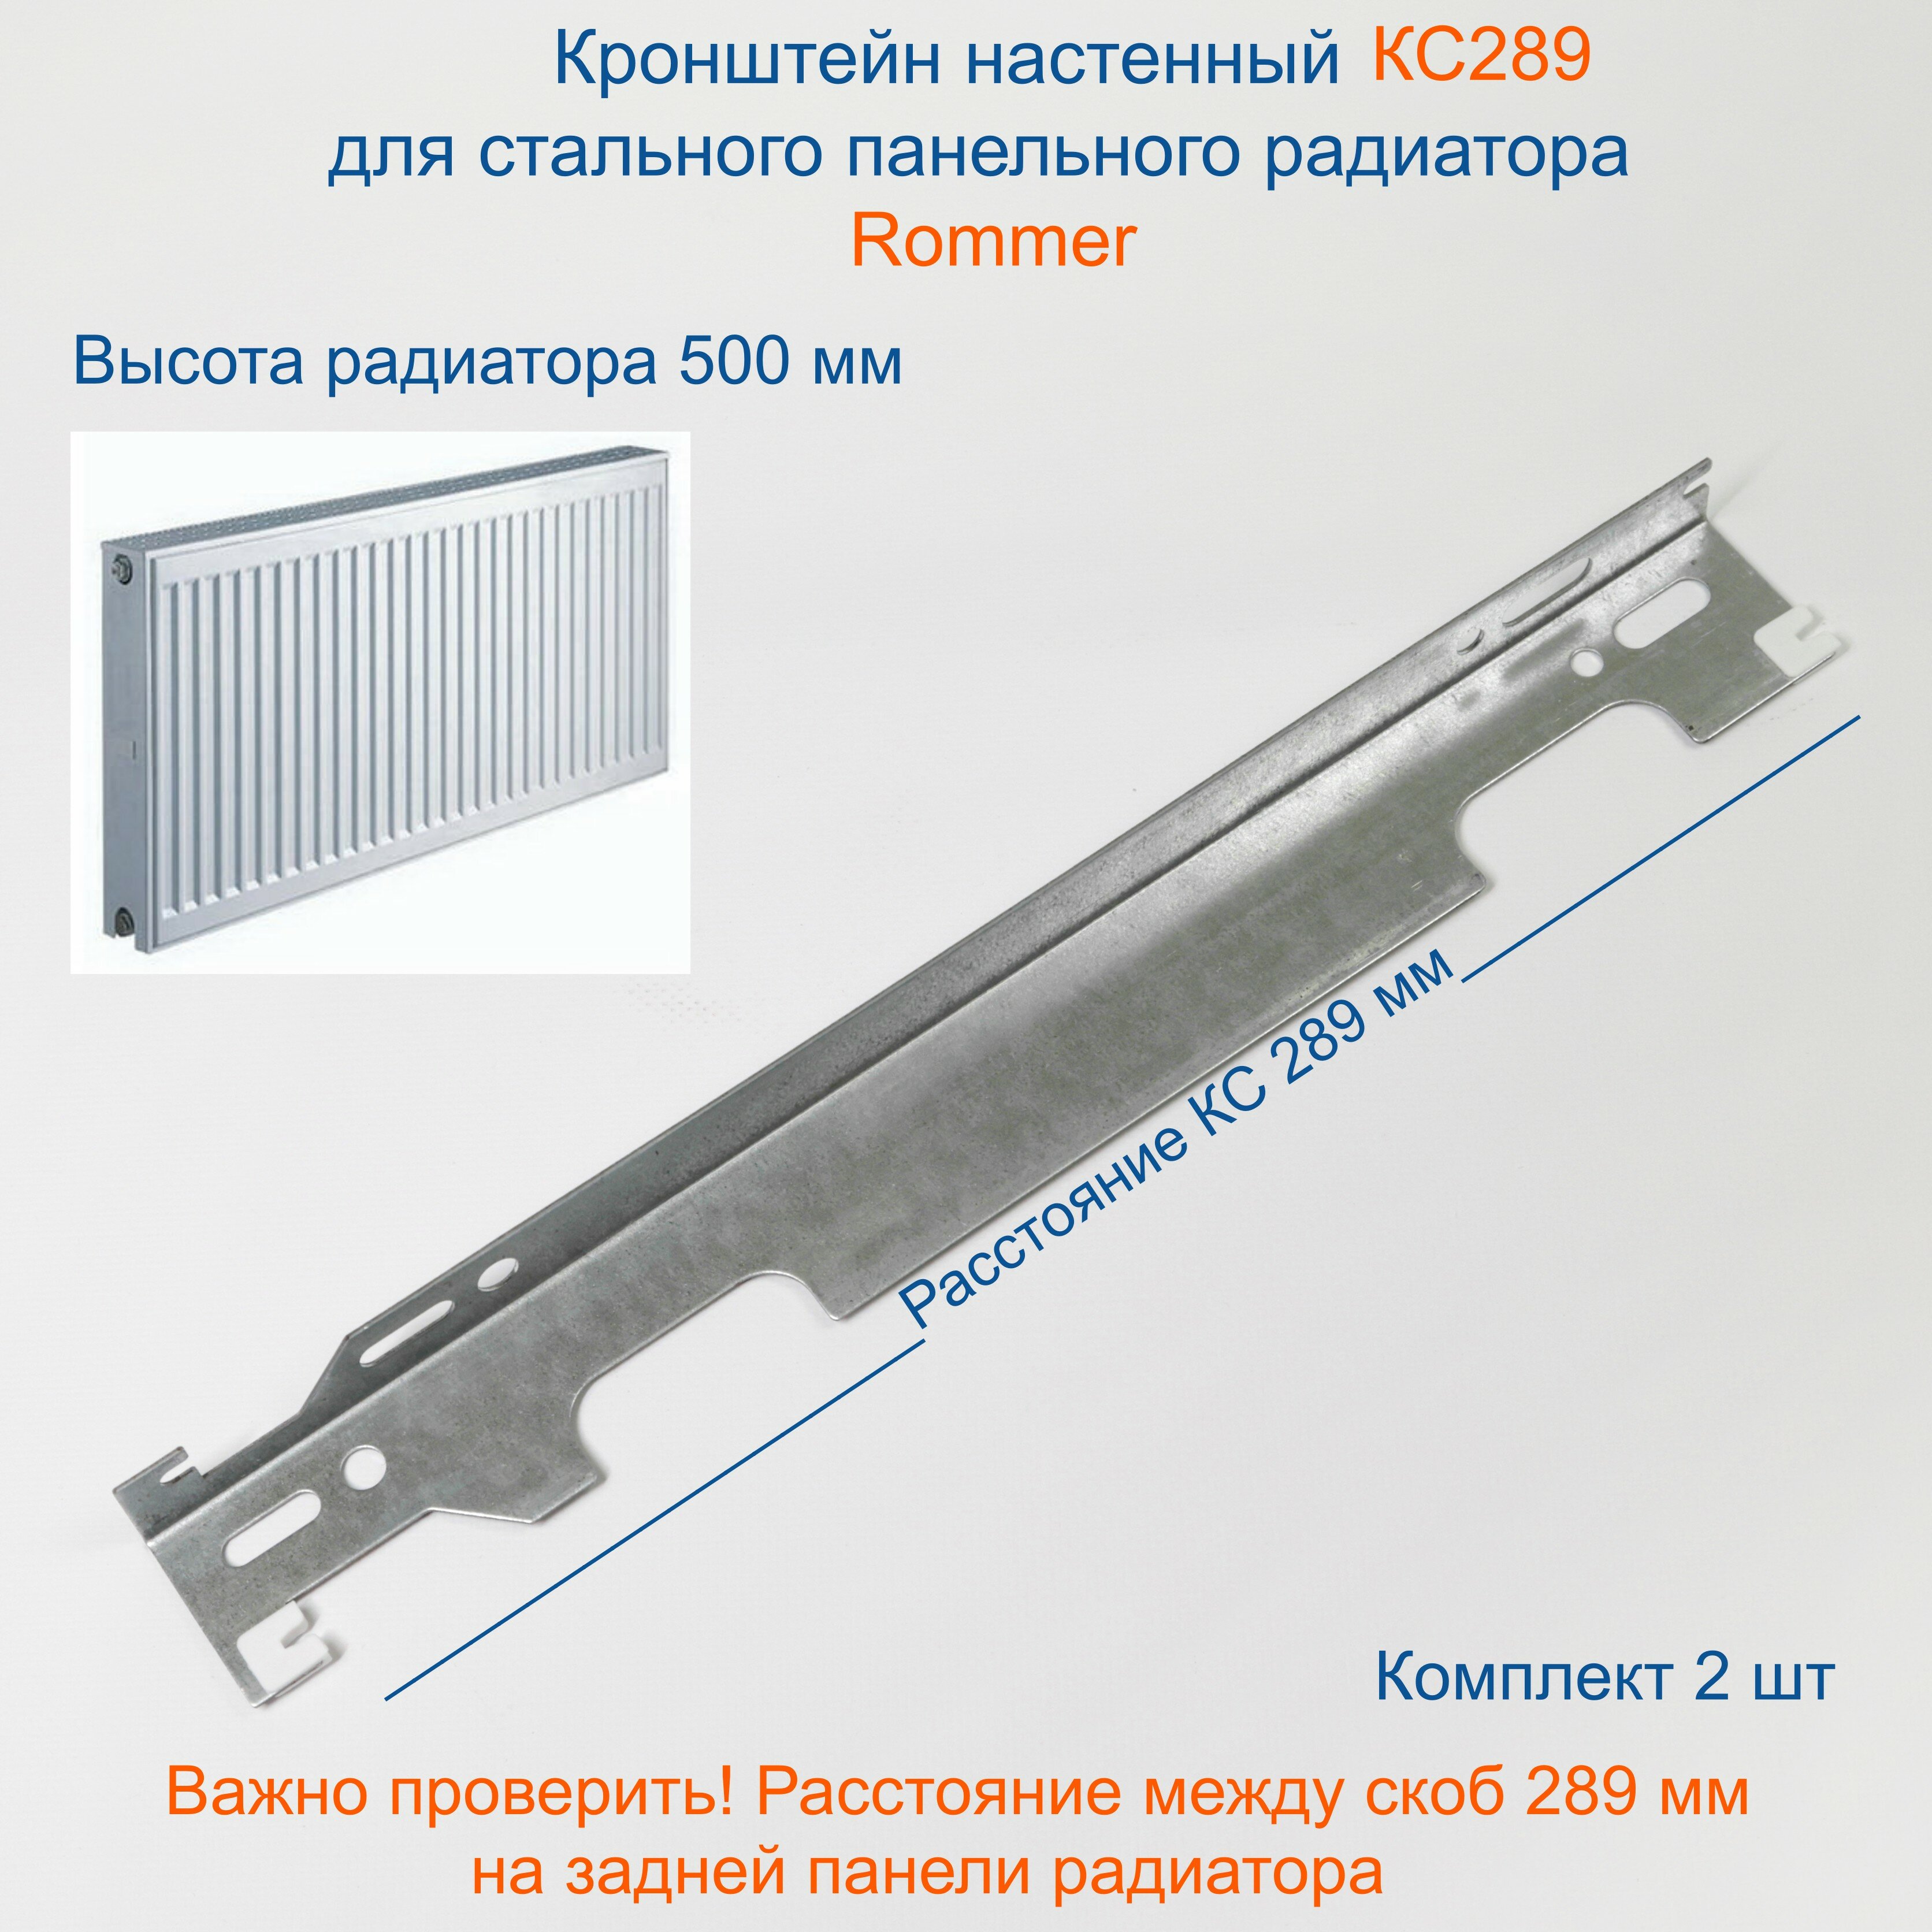 Кронштейн настенный Кайрос для стальных панельных радиаторов Rommer высотой 500 мм Комплект 2 шт